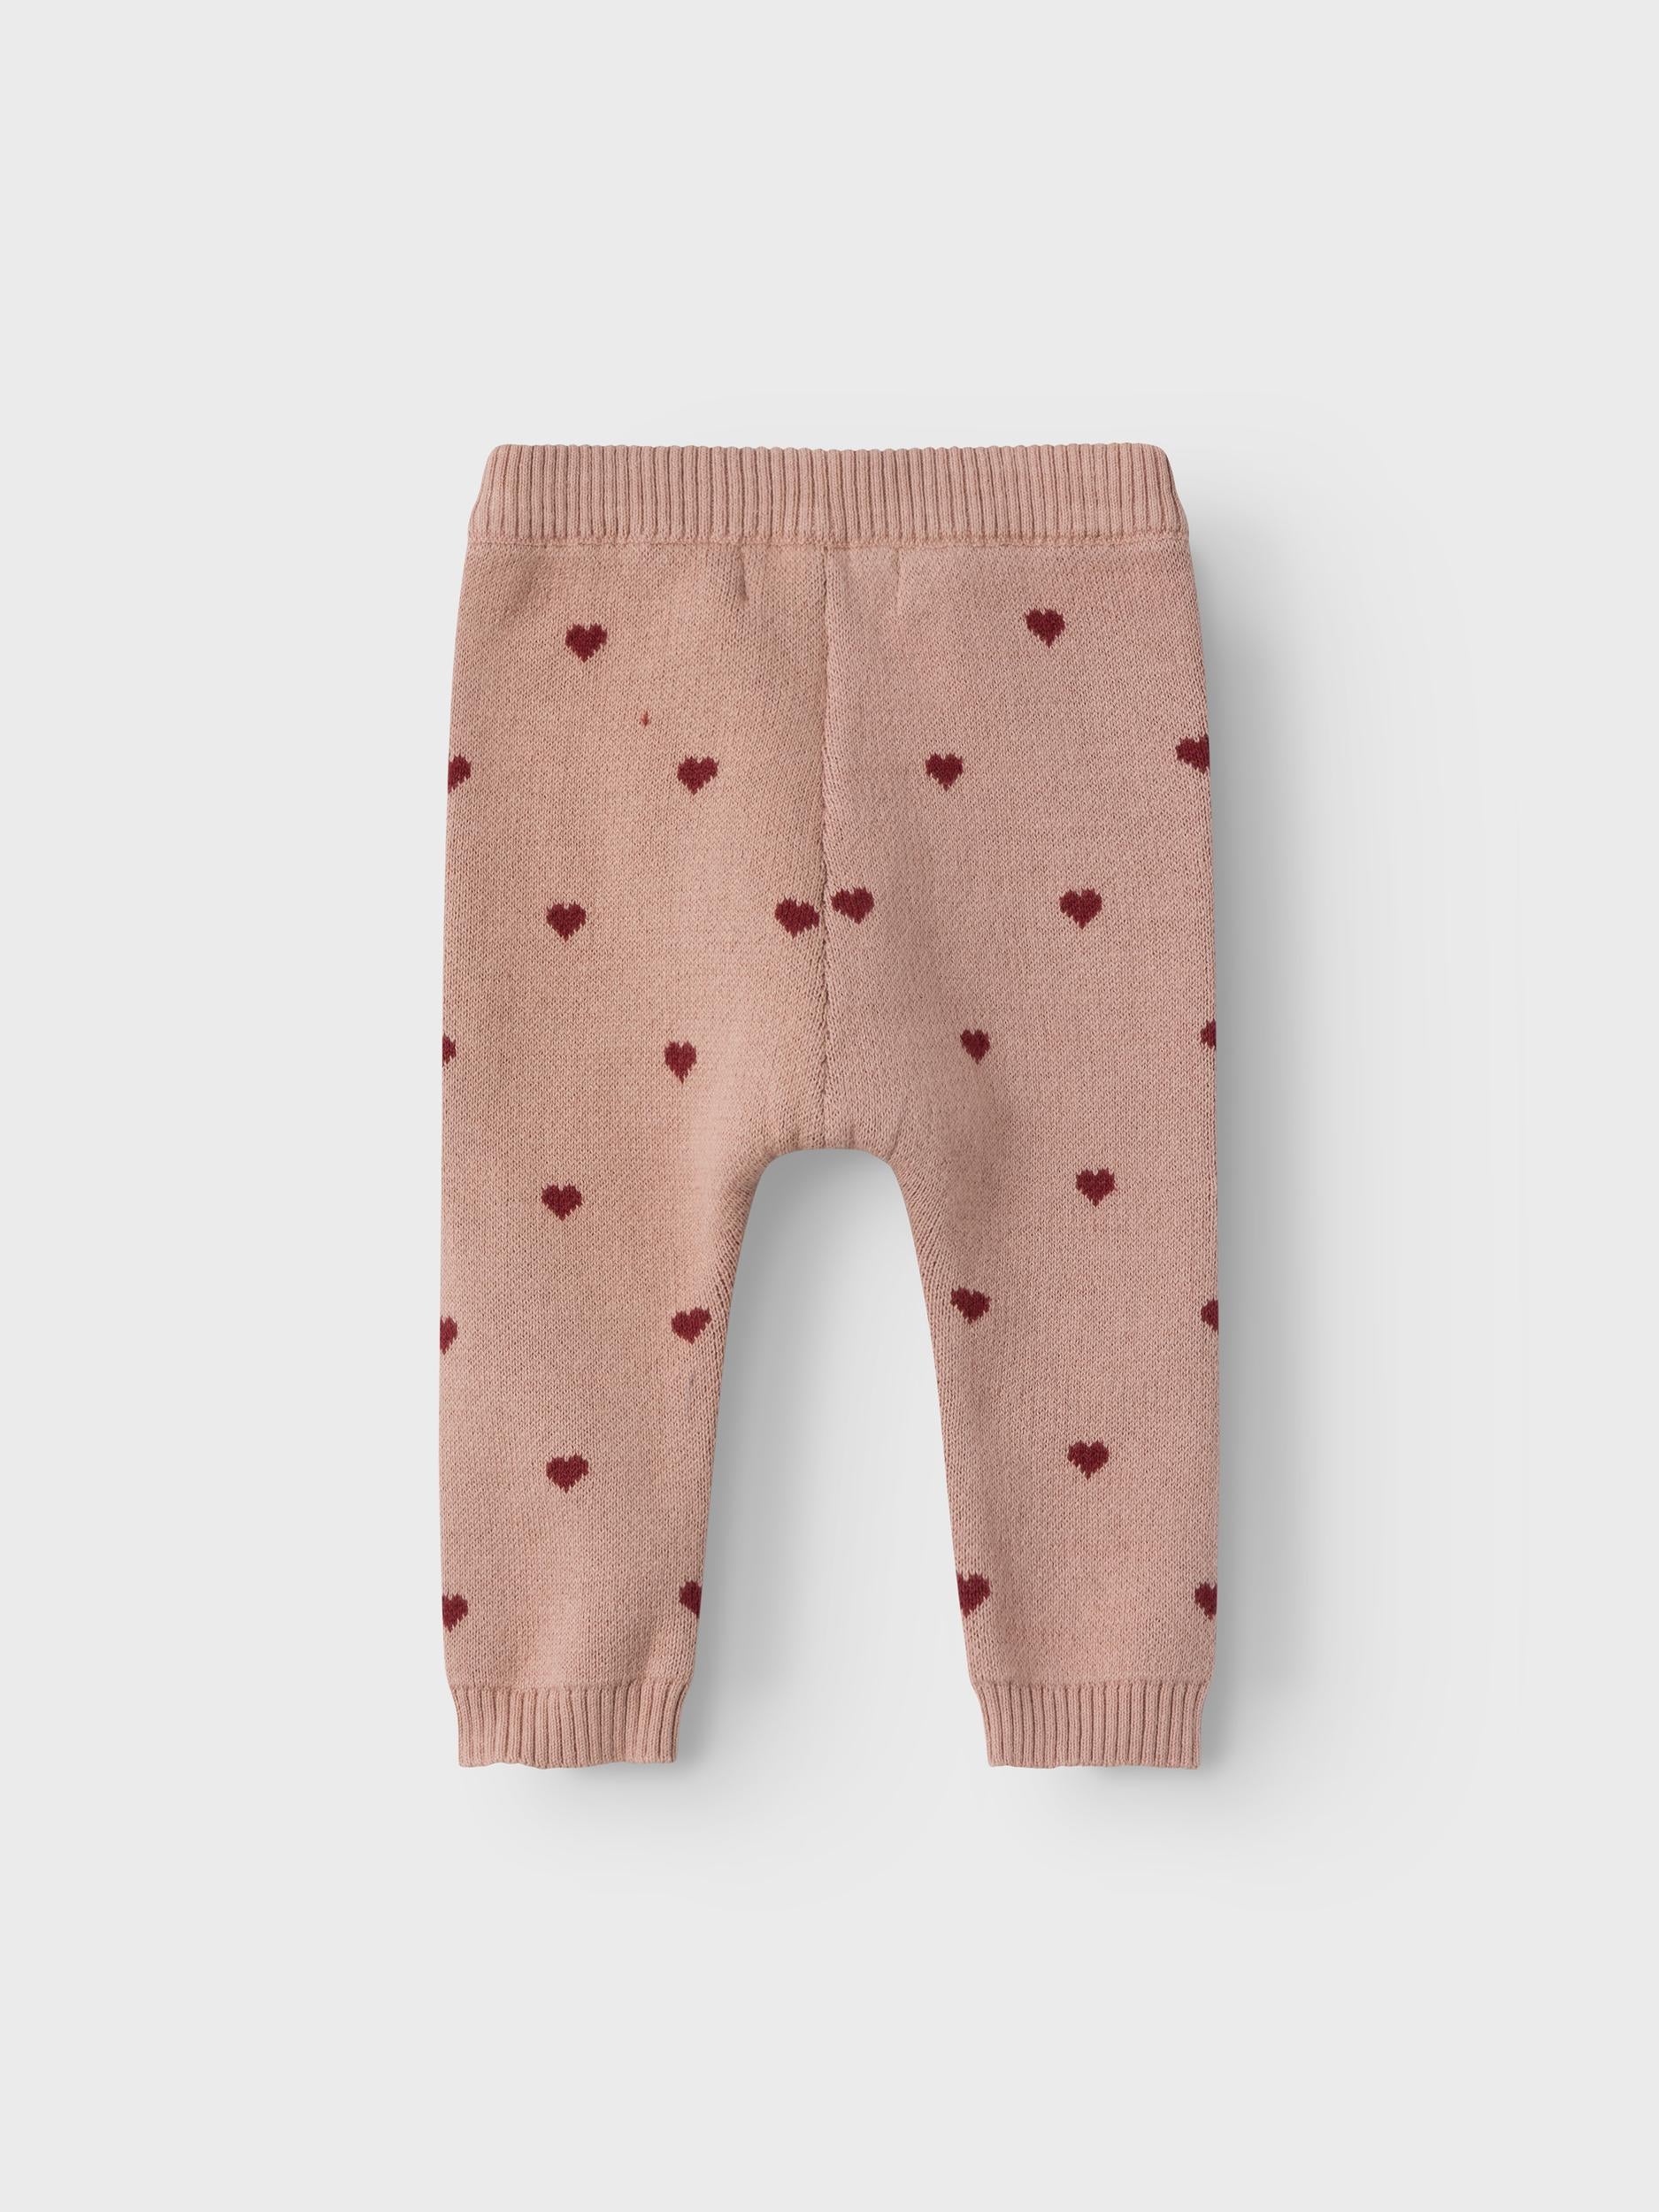 Lil Atelier Saran Knit Pants - Nougat